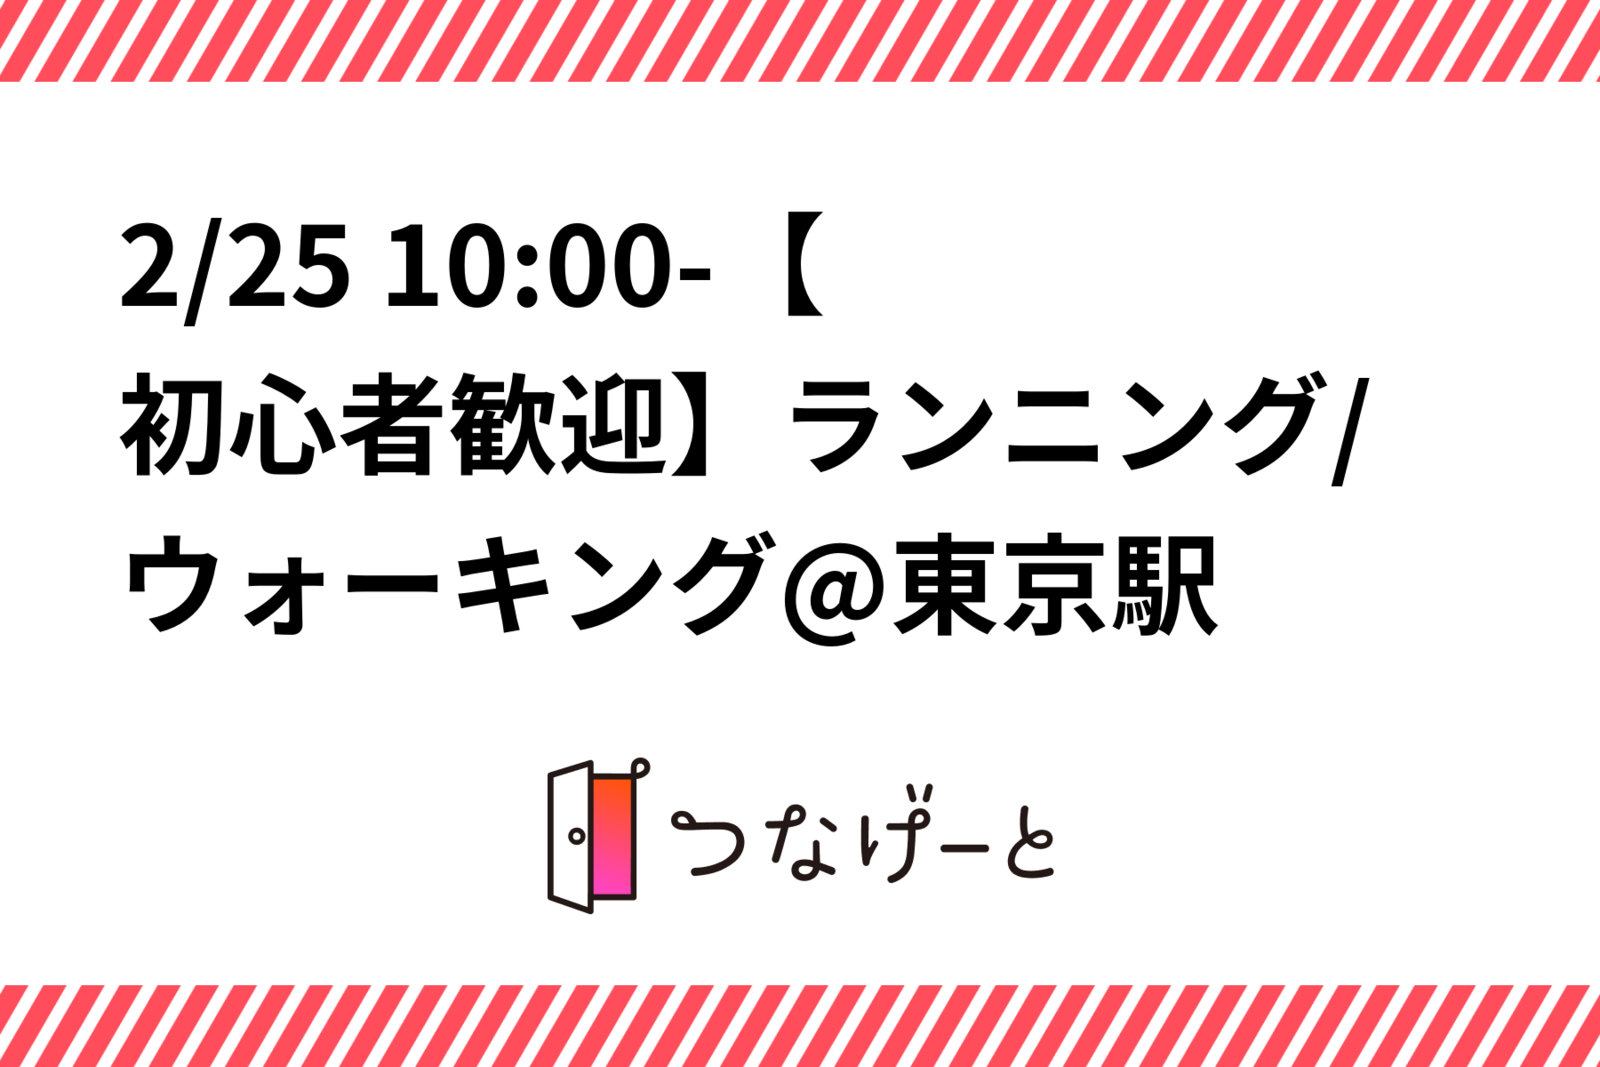 2/25 10:00-【初心者歓迎】ランニング/ウォーキング@東京駅